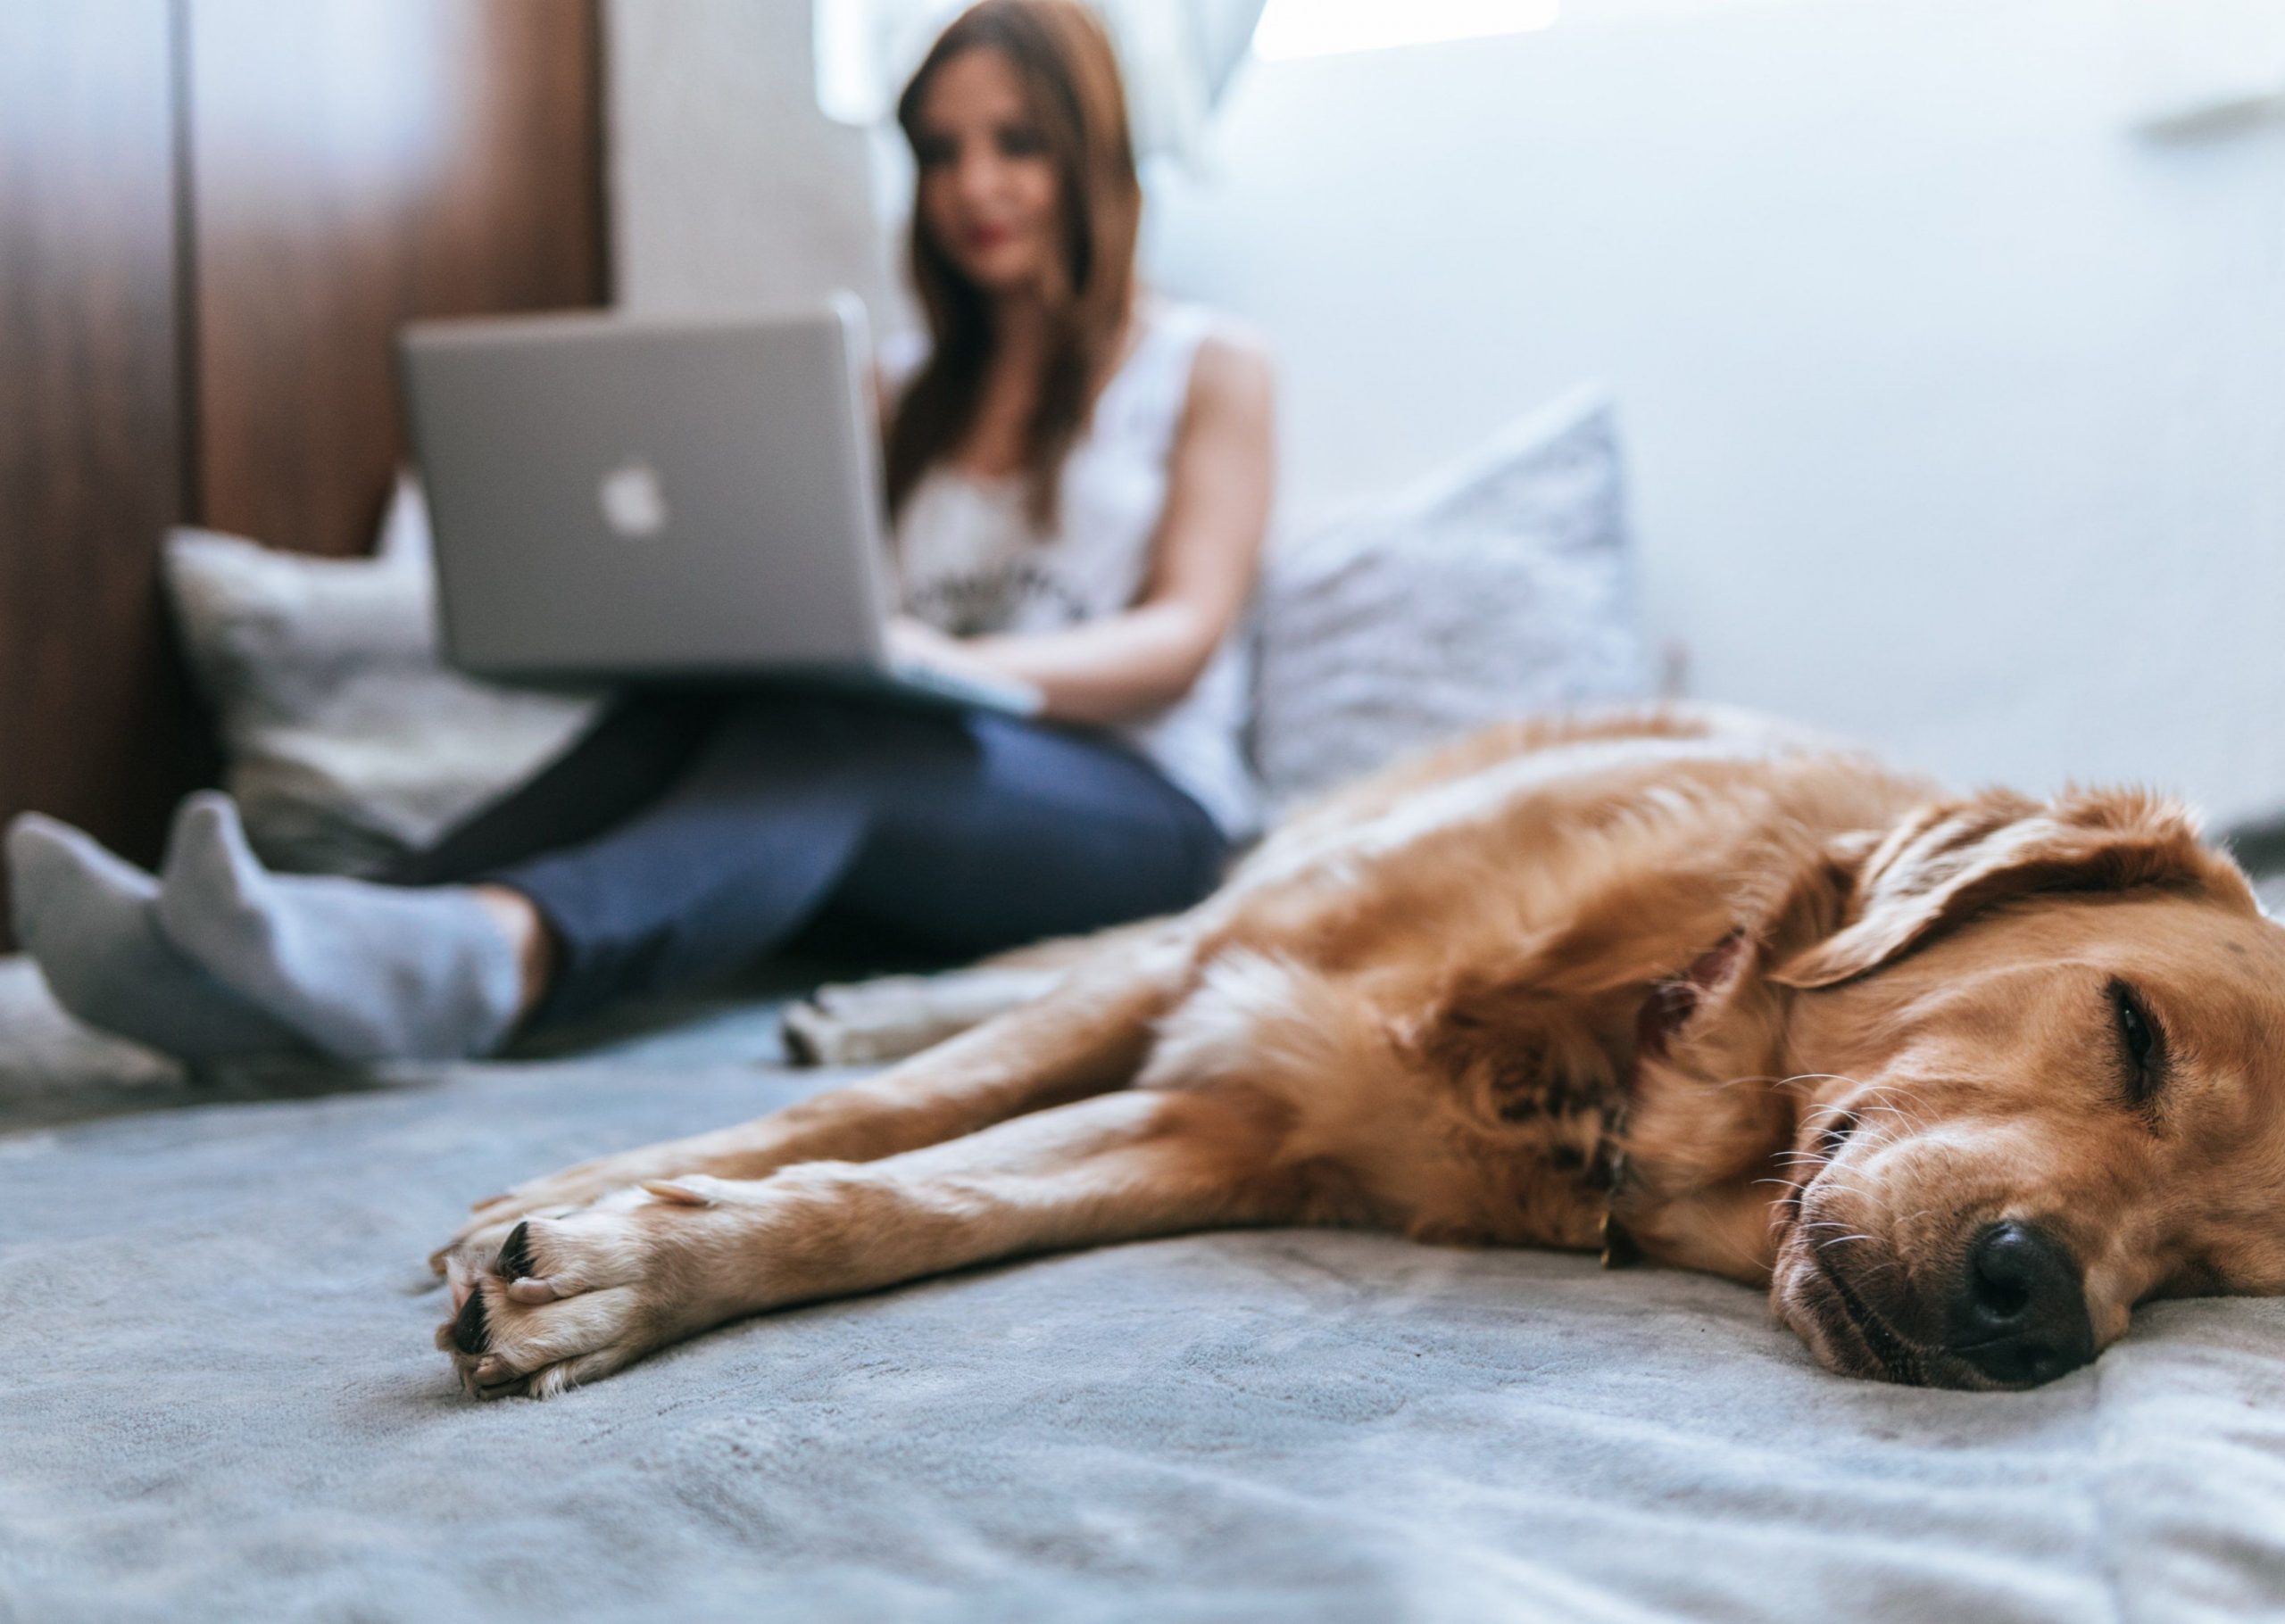 kadın dizüstü bilgisayar kullanırken köpek yanında yatıyor